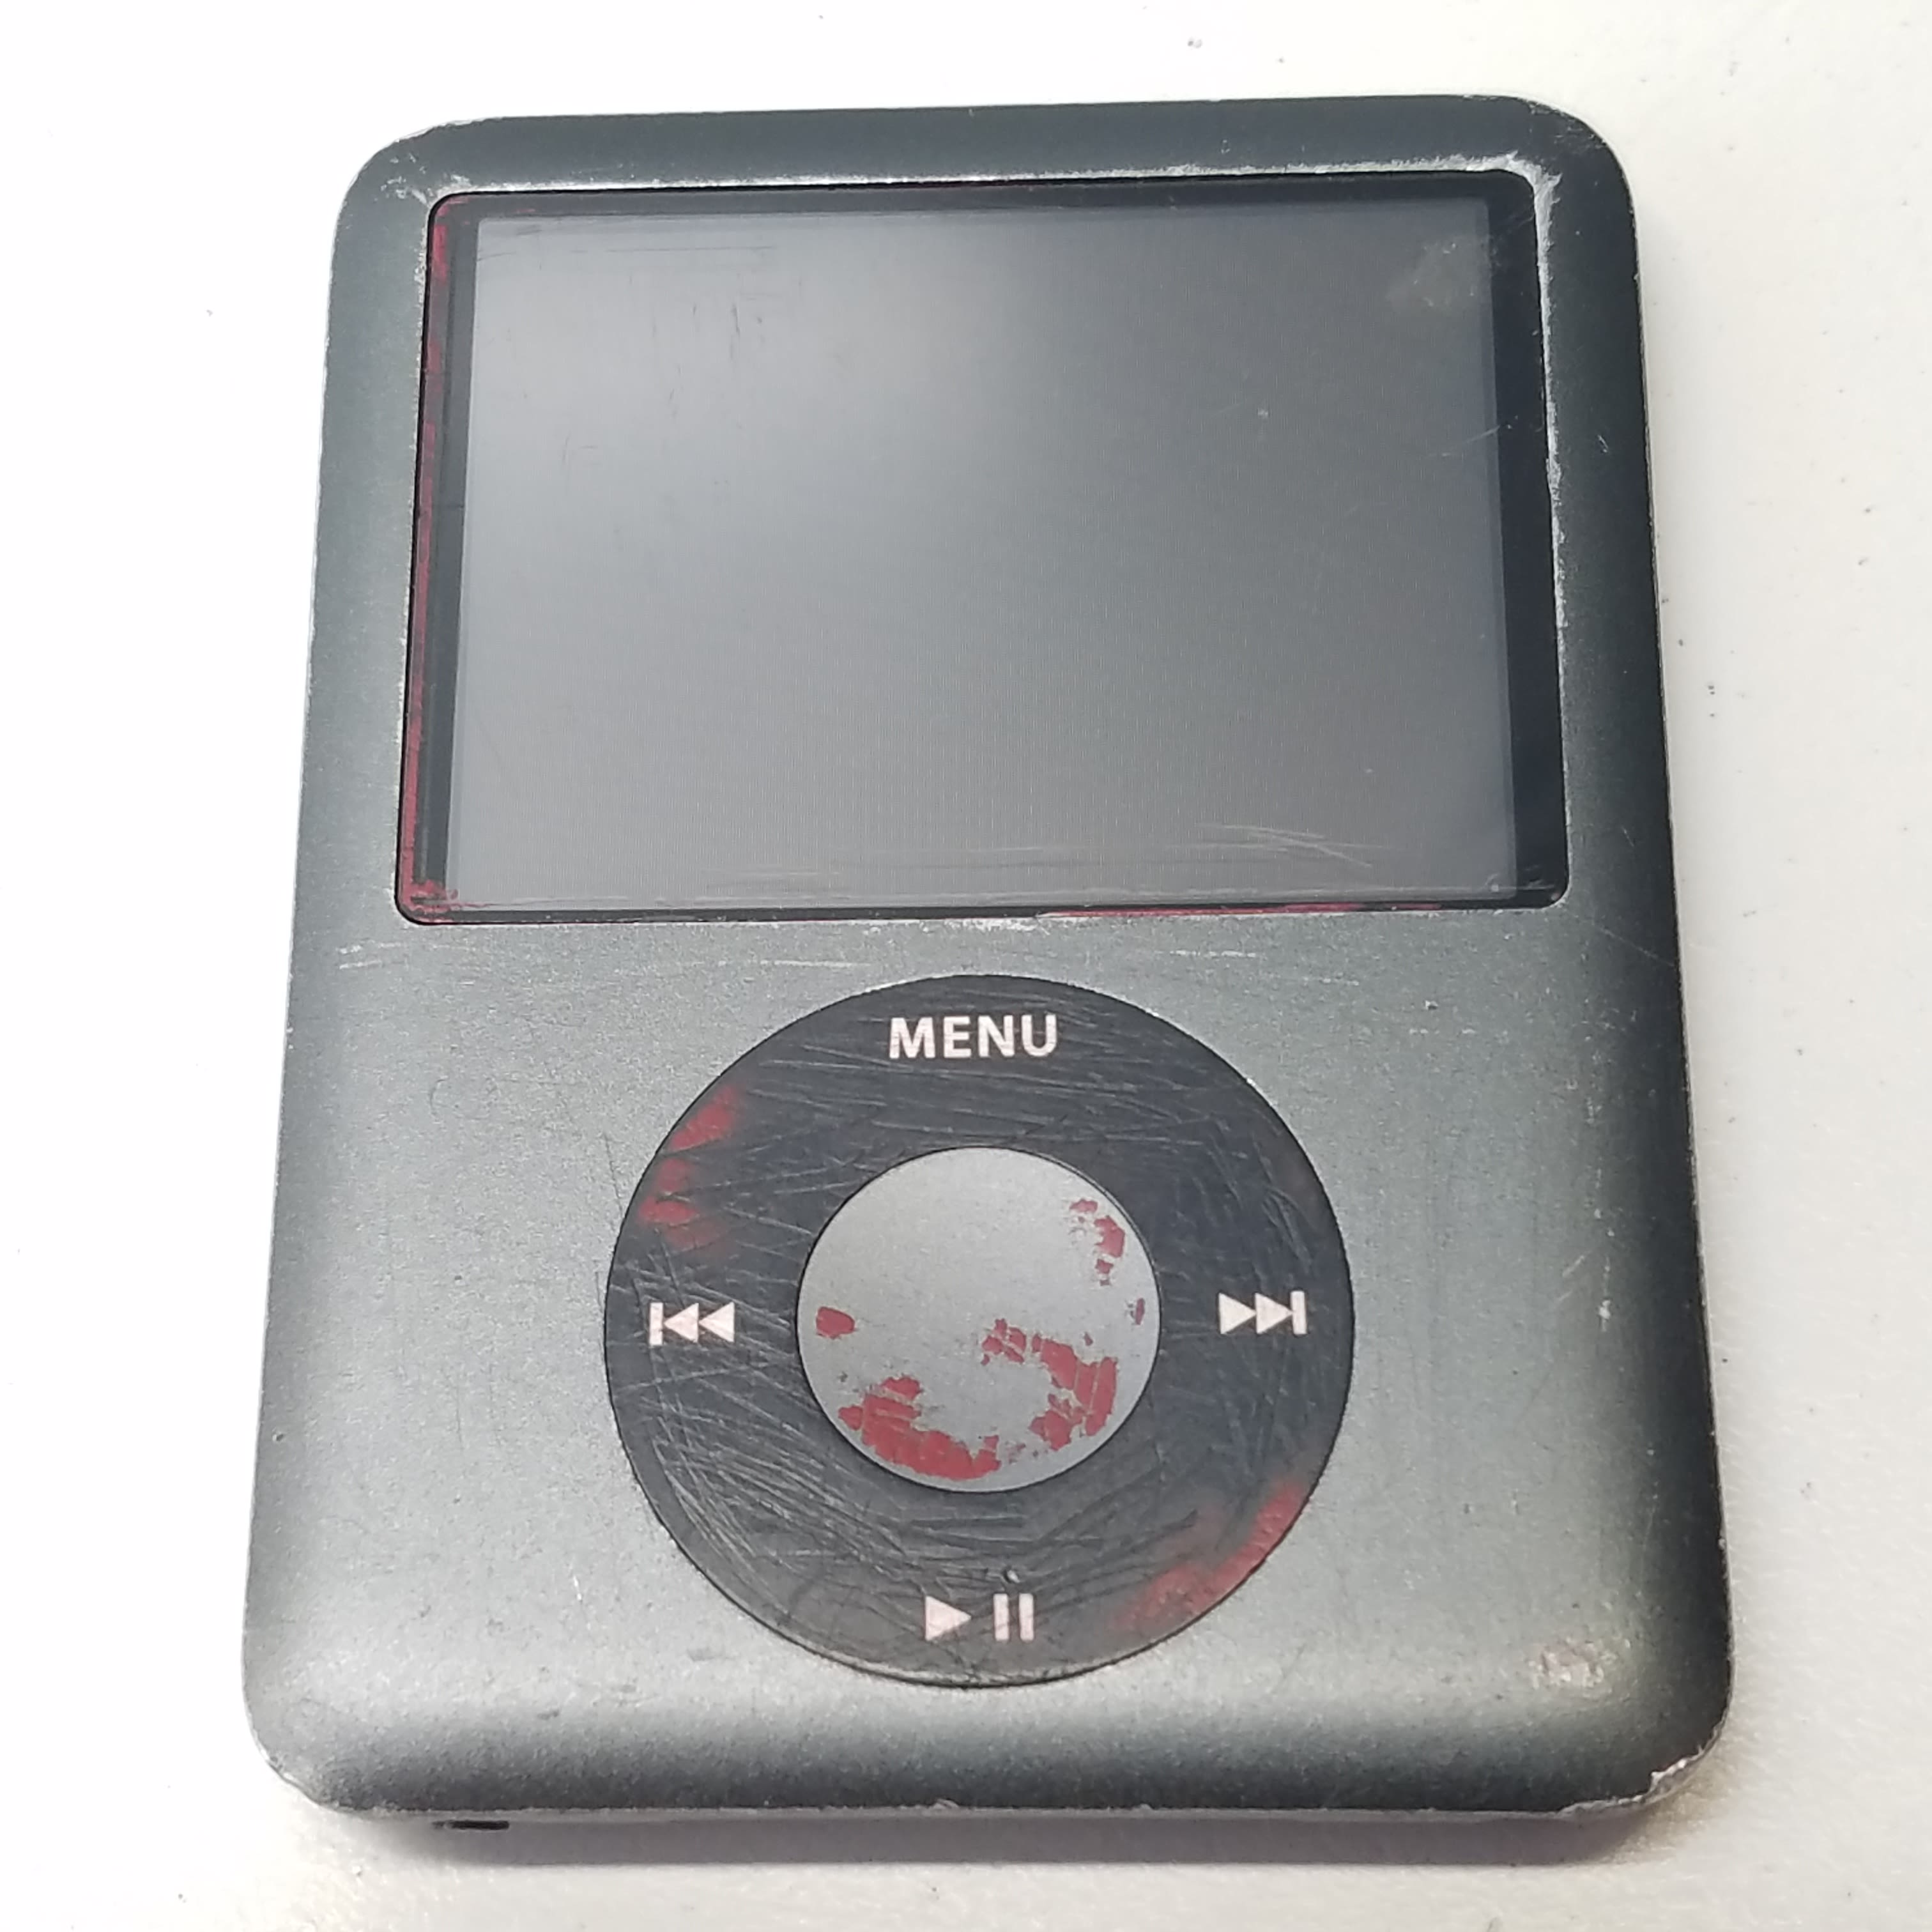 Apple iPod Nano 3rd Gen - Swappa